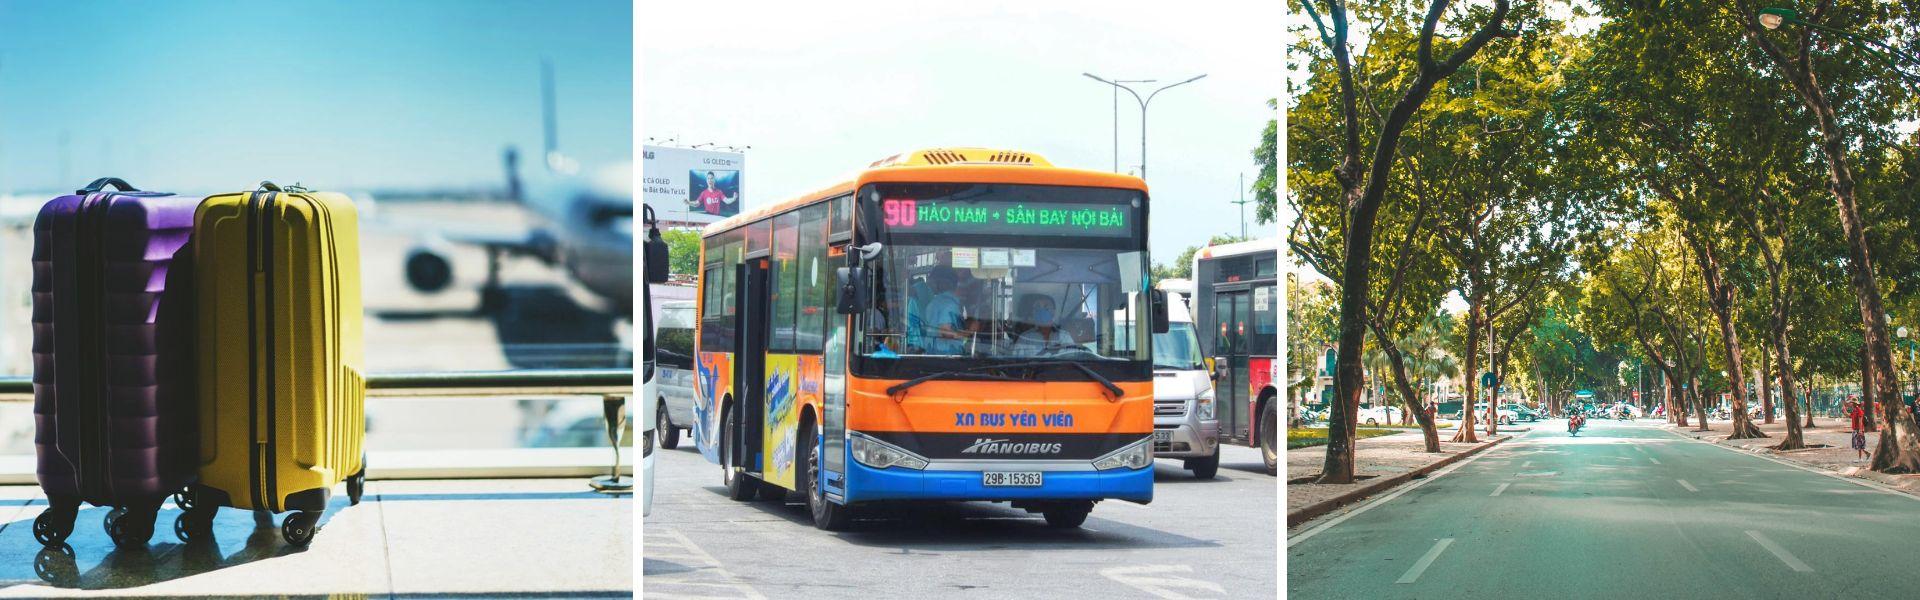 Transfert de l’aéroport de Nôi Bài au centre-ville de Hanoi en bus